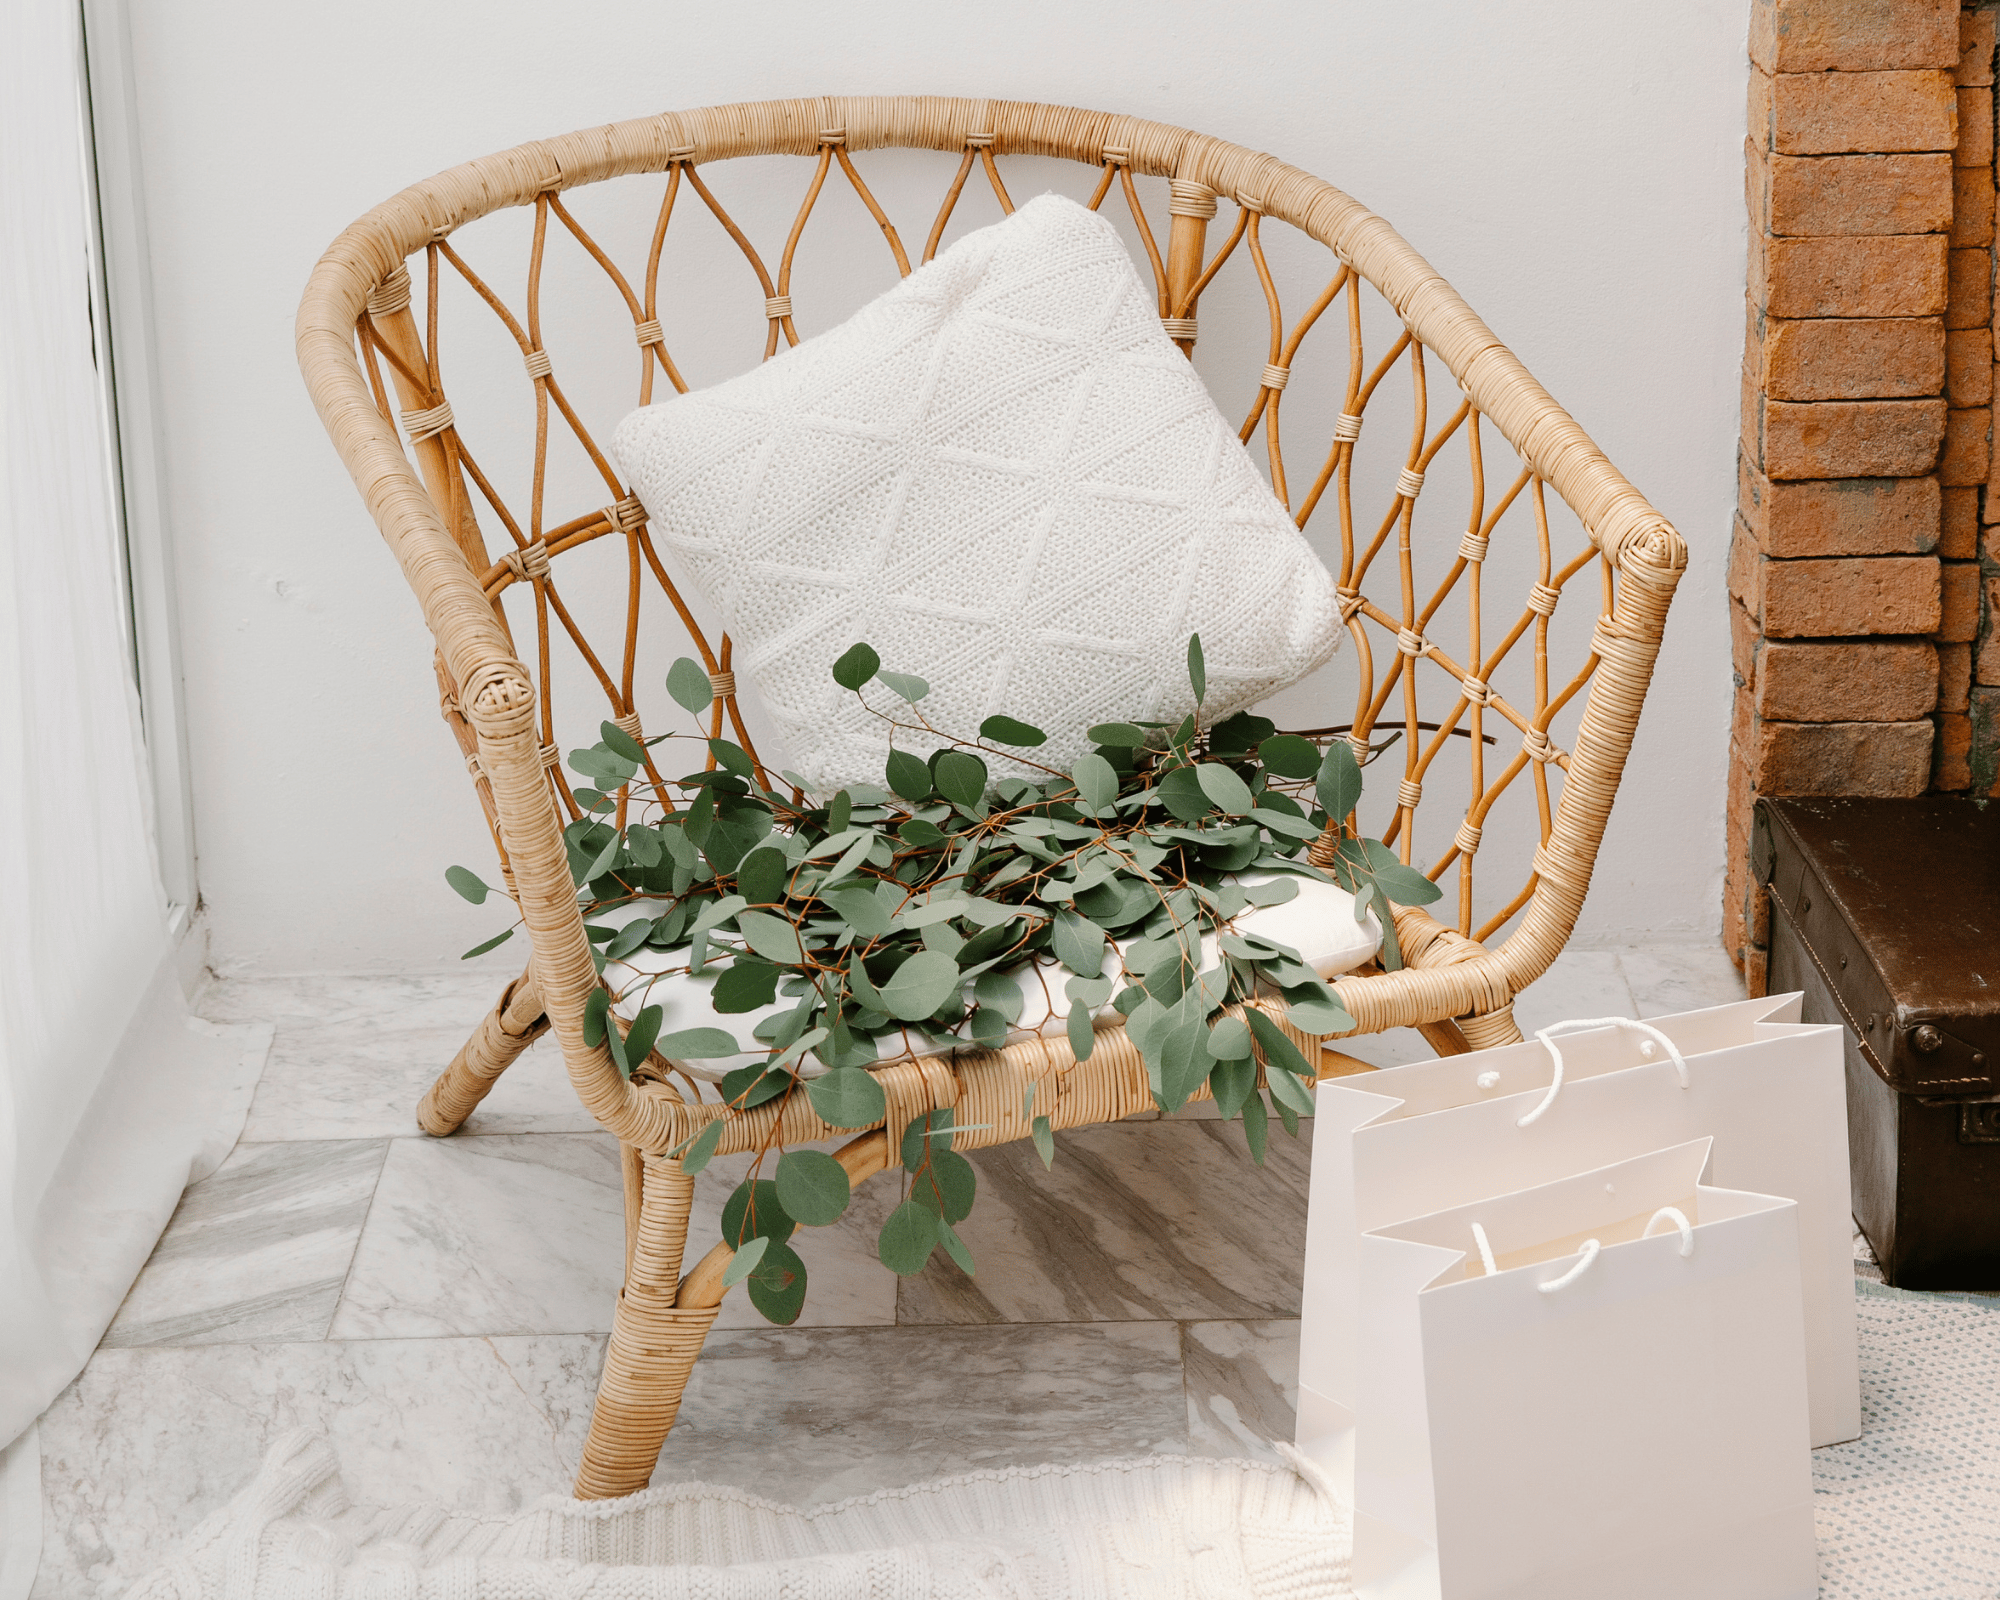 Fauteuil en rotin avec un coussin blanc et des petites feuilles de lierre en décoration , près du fauteuil deux sachet de shopping balncs